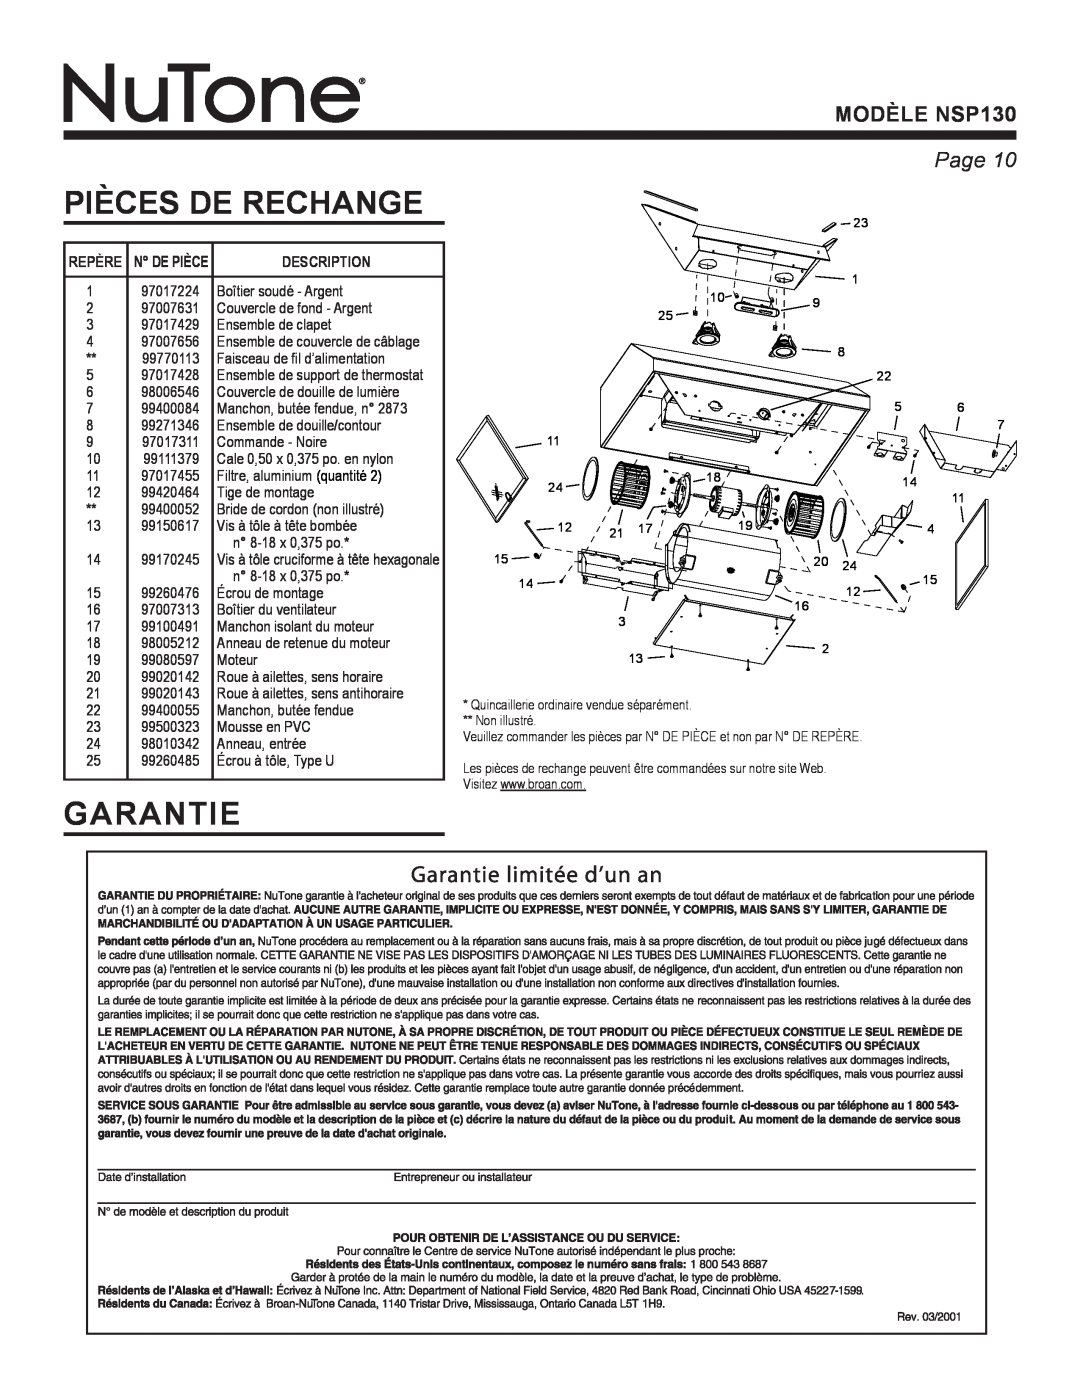 NuTone warranty Pièces De Rechange, Garantie, Page, MODÈLE NSP130 